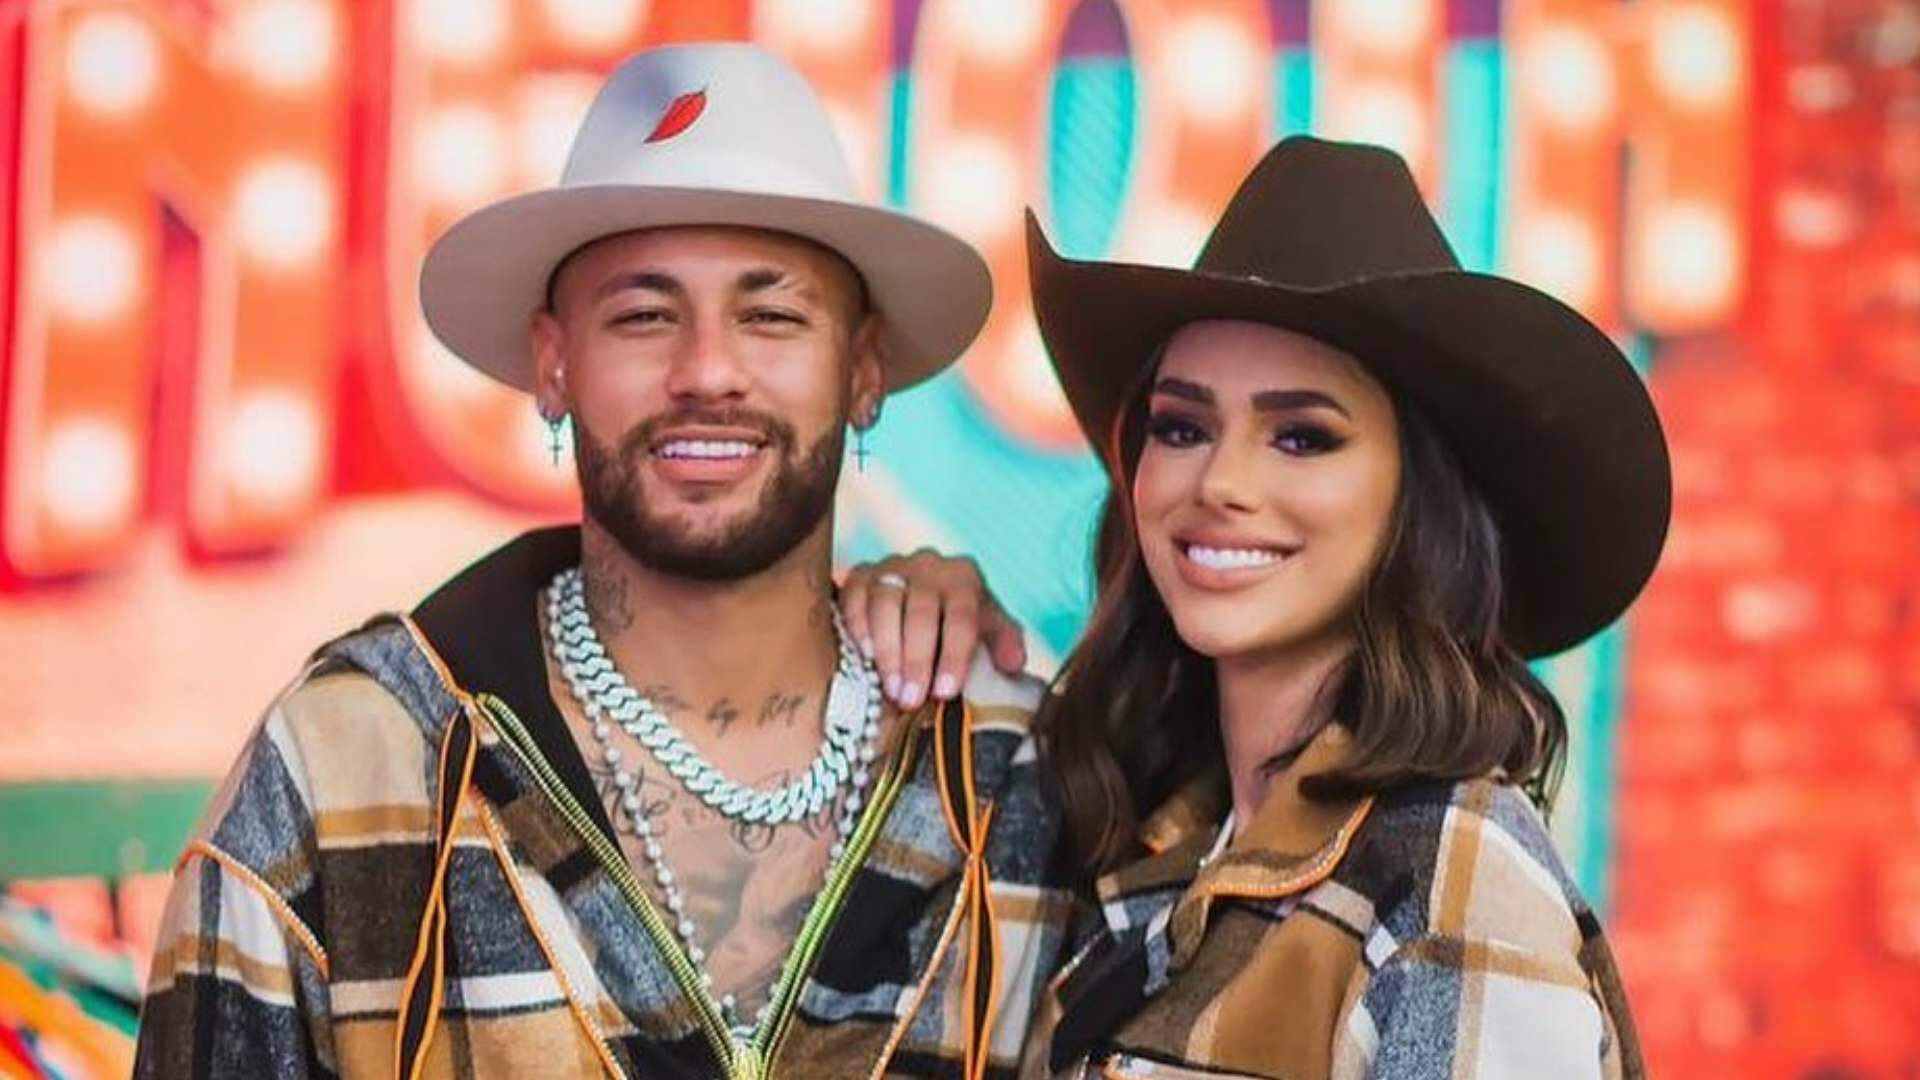 Chegou ao fim! Neymar confirma término de relacionamento com Bruna Biancardi, diz jornalista - Metropolitana FM